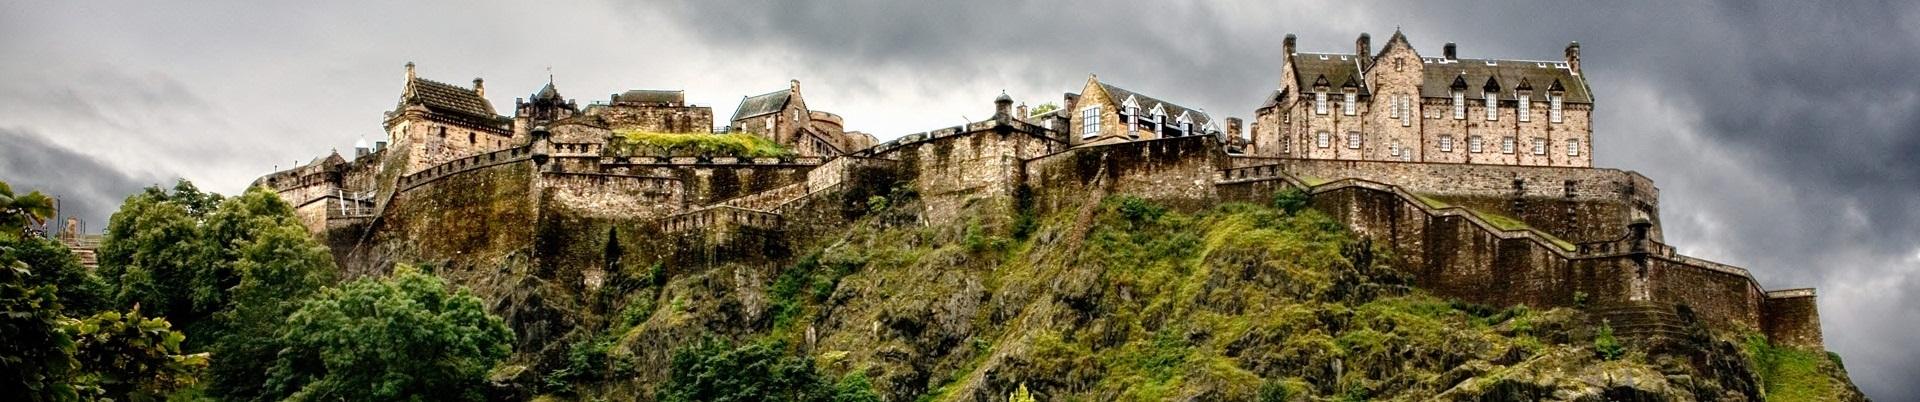 Edinburgh Castle Internal